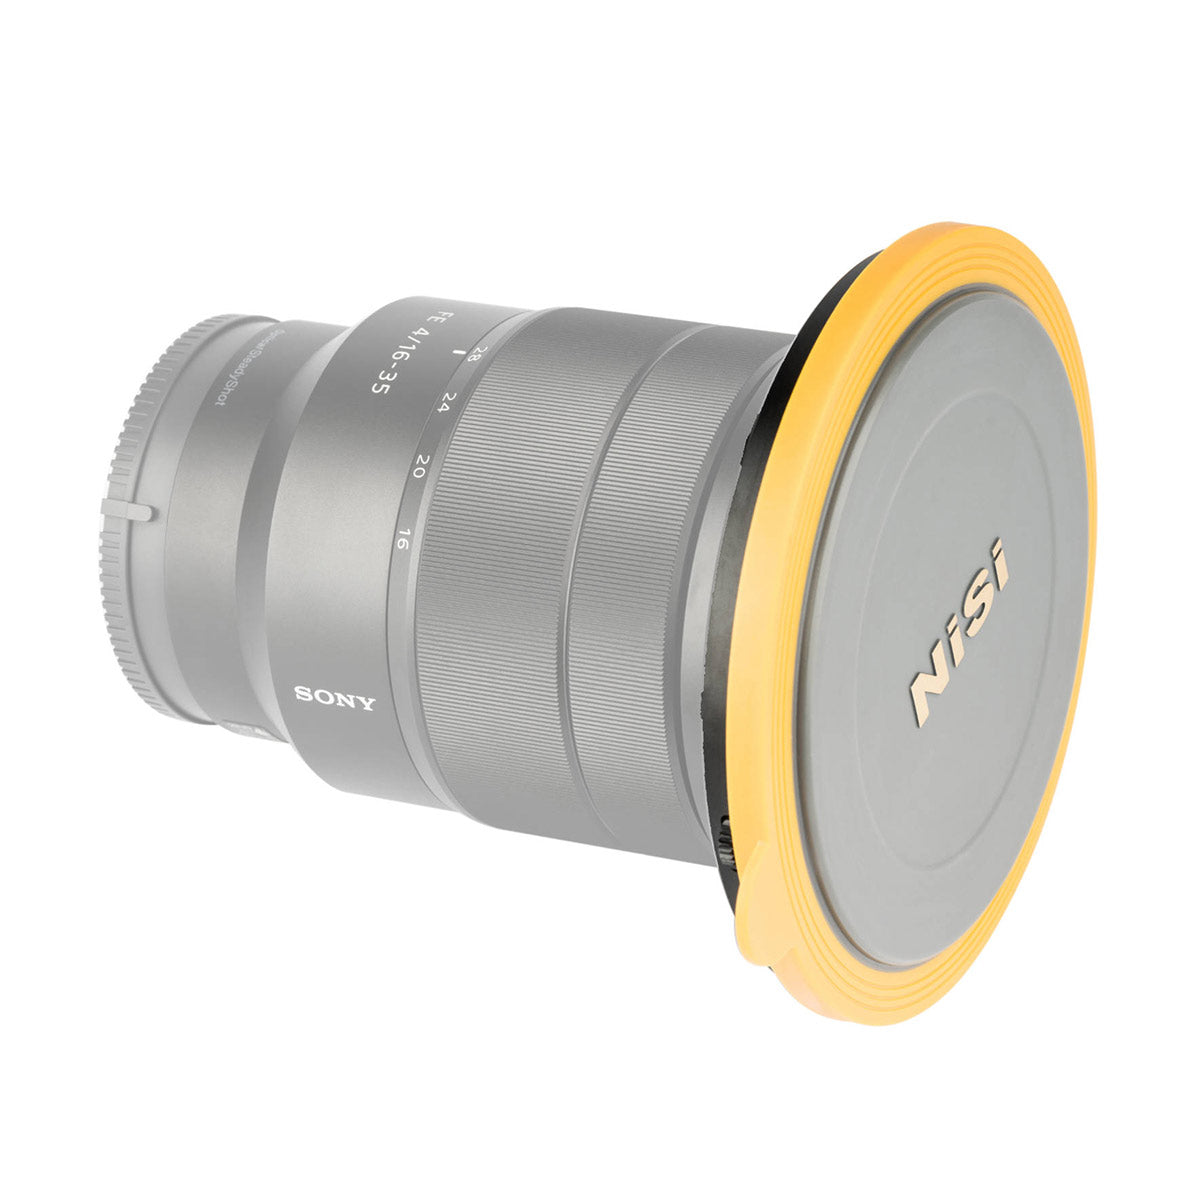 NiSi V6 100mm Filter Holder Kit with Enhanced Landscape Circular Polarizer and Lens Cap